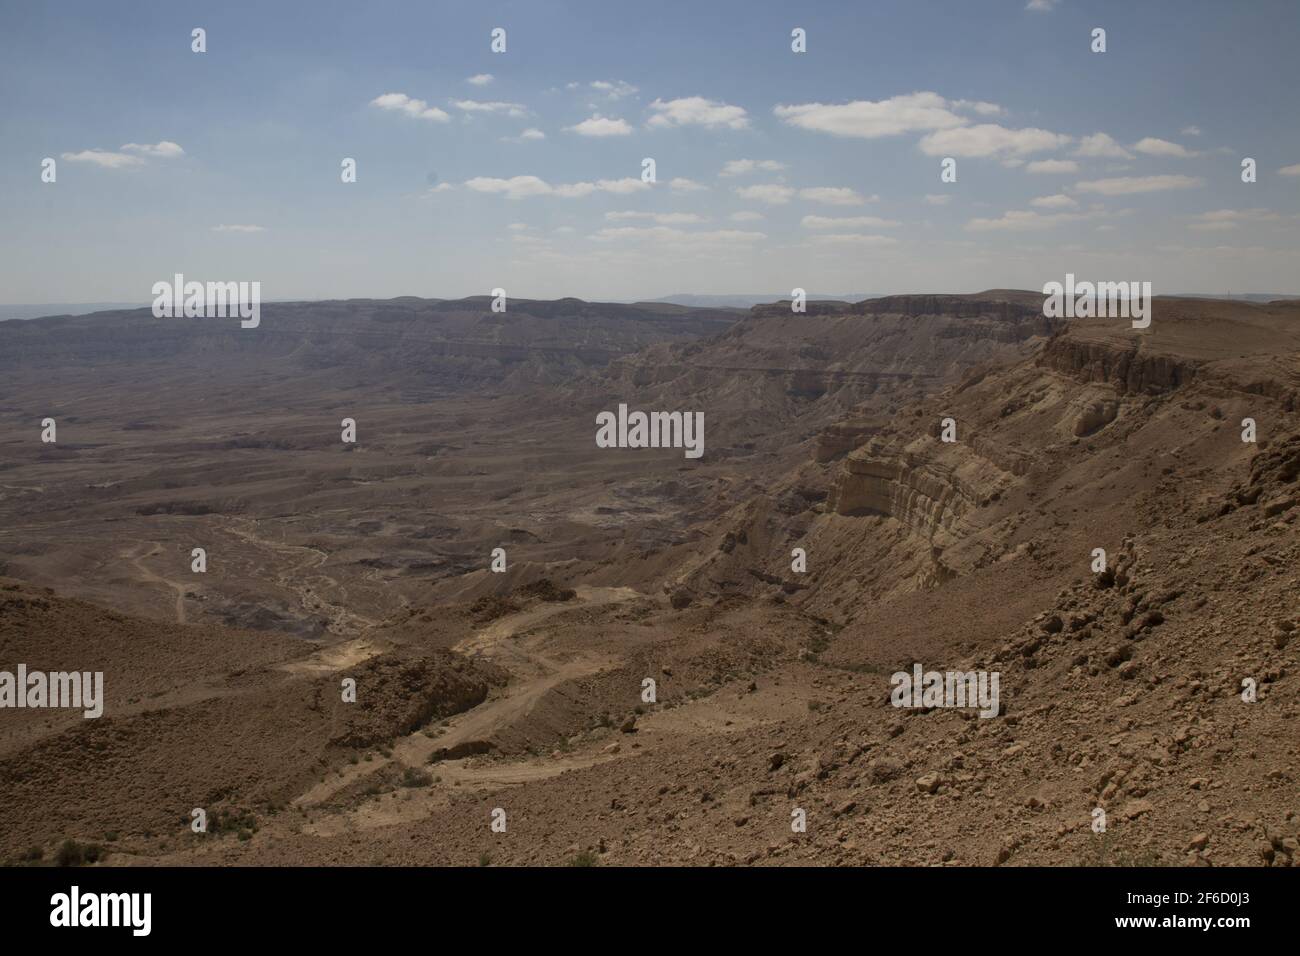 Der kleine Krater ist ein Machtesch, eine geologische erodische Landform der Negev-Wüste. Einer von fünf makhteshim in Israel und sieben in der Welt, es ist die t Stockfoto